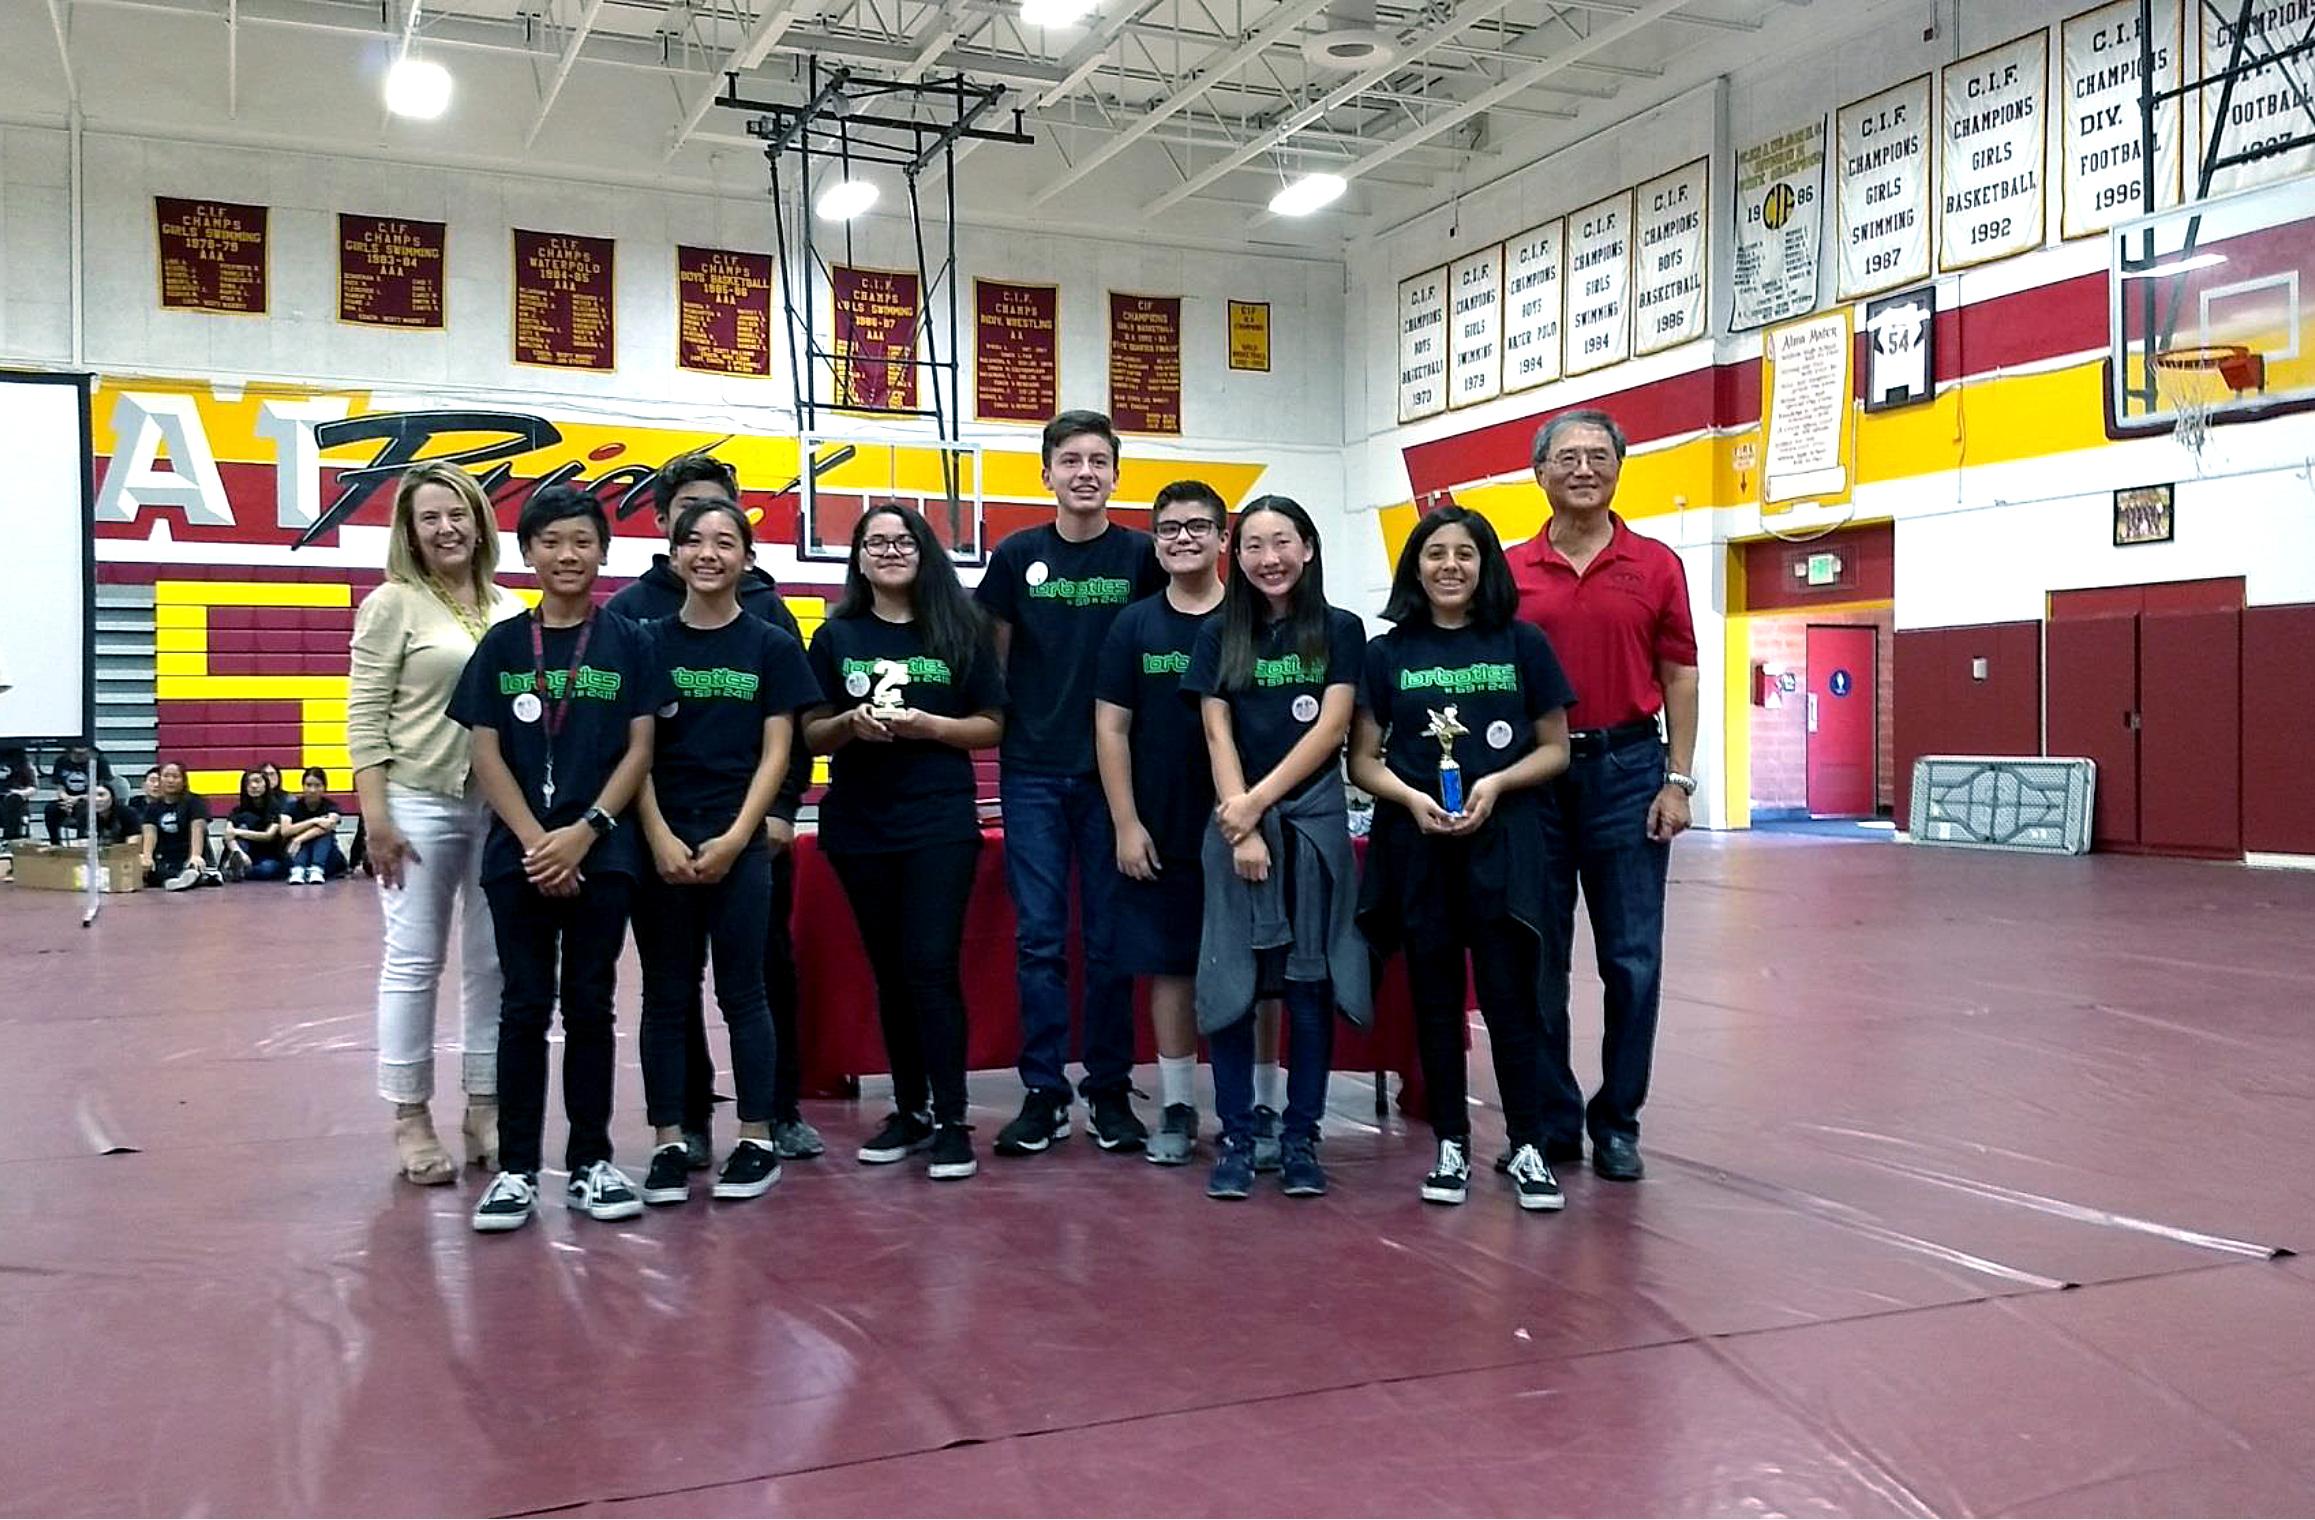    8th Grade Lorbotics wins Champion Award at Wilson High School on October 20, 2018.